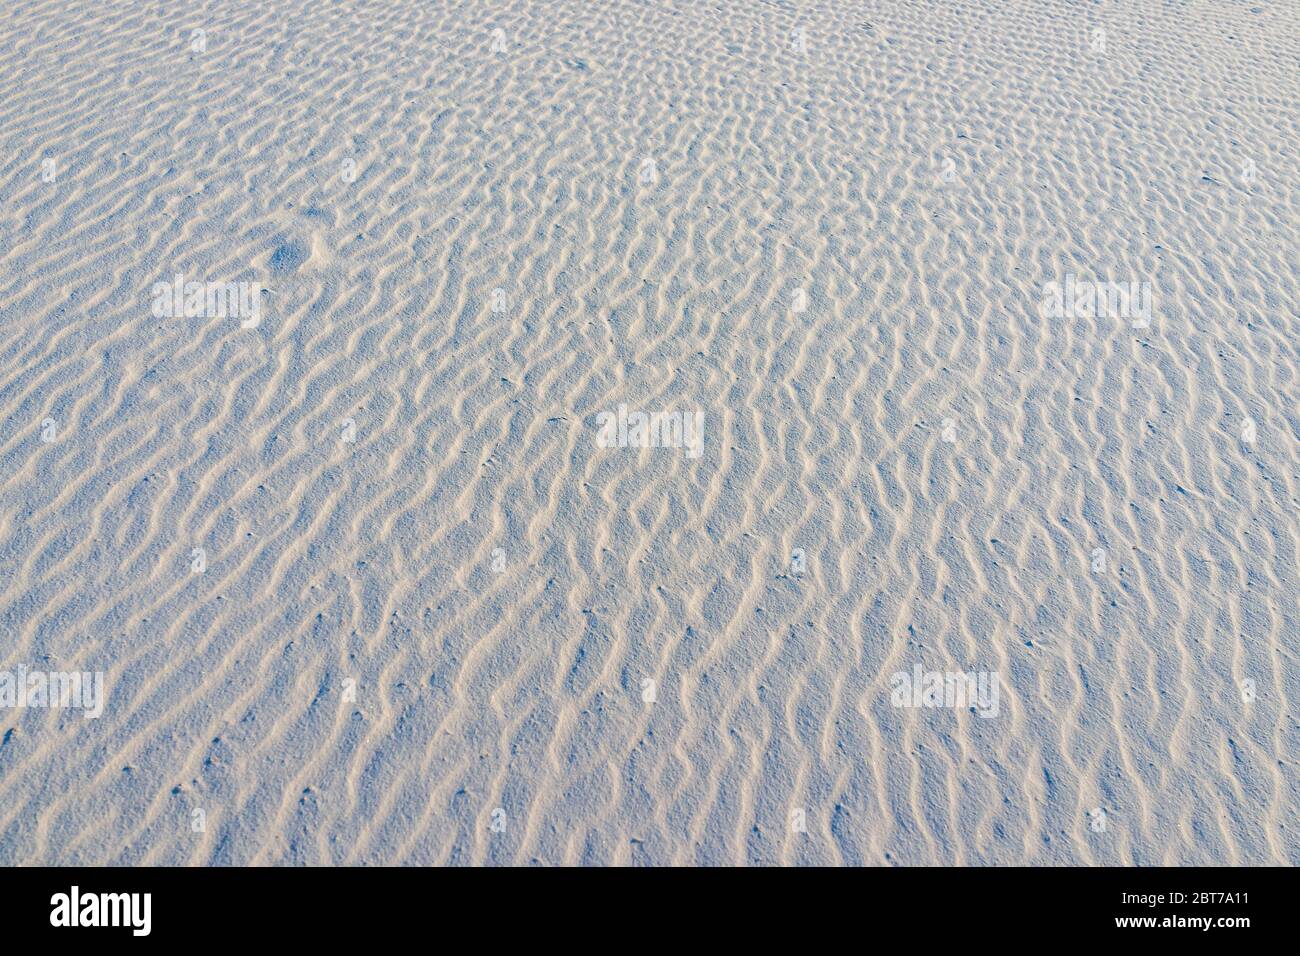 Dunes de sable blanc monument national sable de gypse avec ondulation abstraite modèle ondulé avec empreinte à la Luz, Nouveau-Mexique Etats-Unis en Amérique Banque D'Images